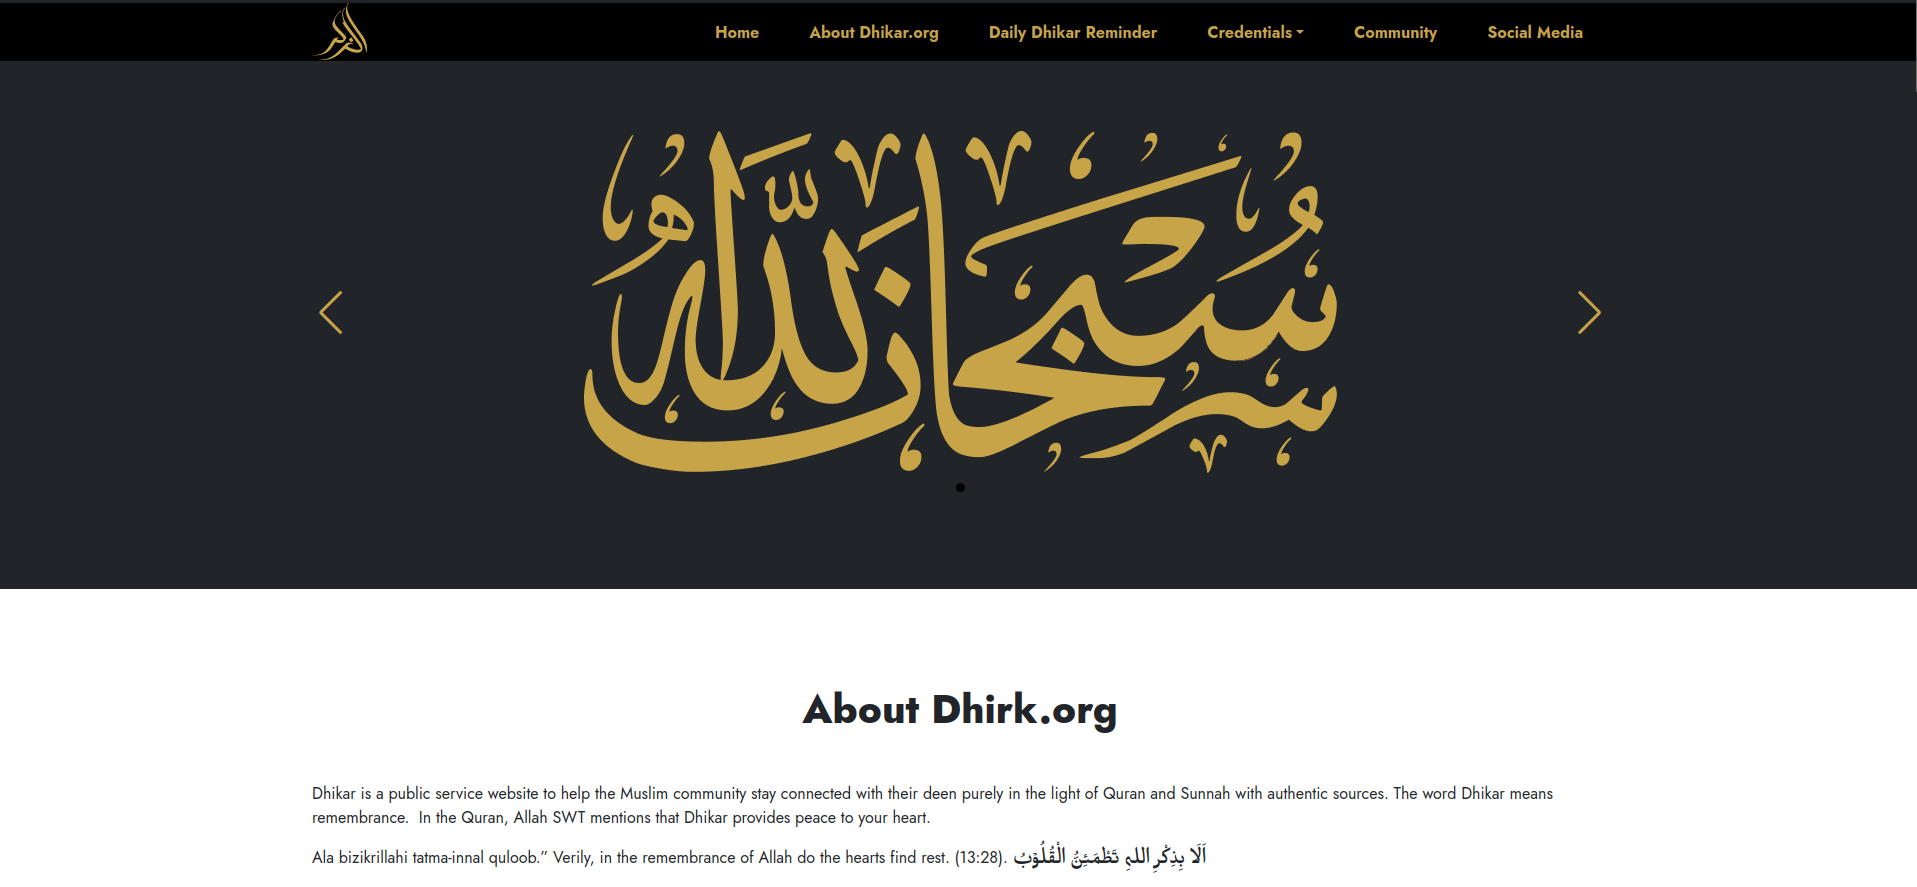 Dhikar.org